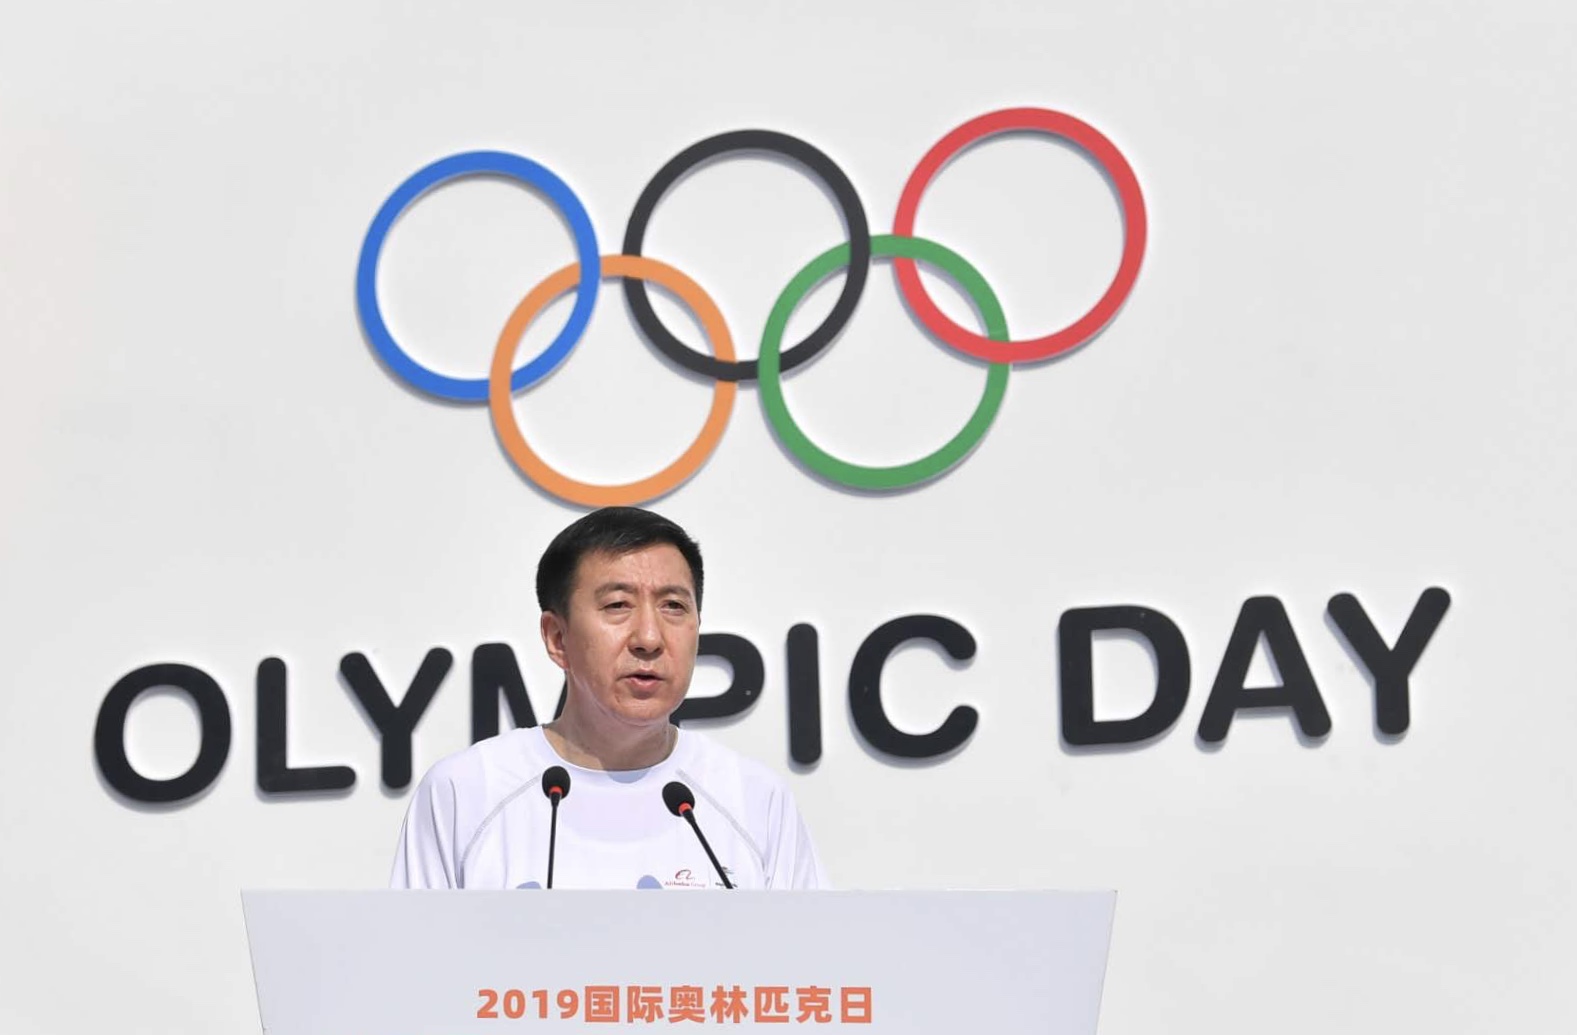 6月23日A北京市副市長B北京冬奧組委執行副主席張建東代表北京冬奧組委發佈了m北京2022年冬奧會和冬殘奧會低碳管理工作方案nC]新京報^